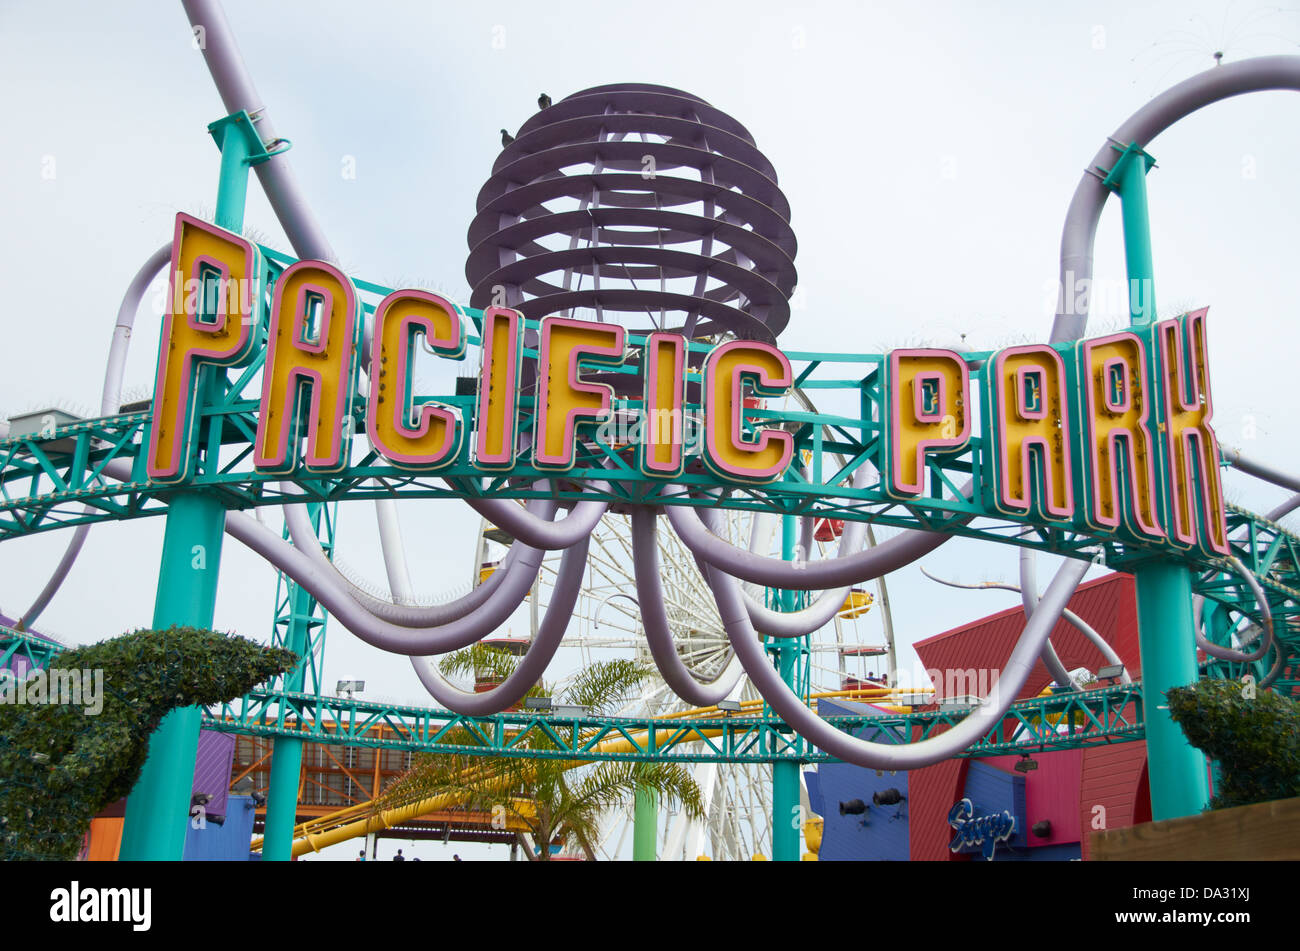 Pacific Park amusement park on Santa Monica pier, USA. Stock Photo